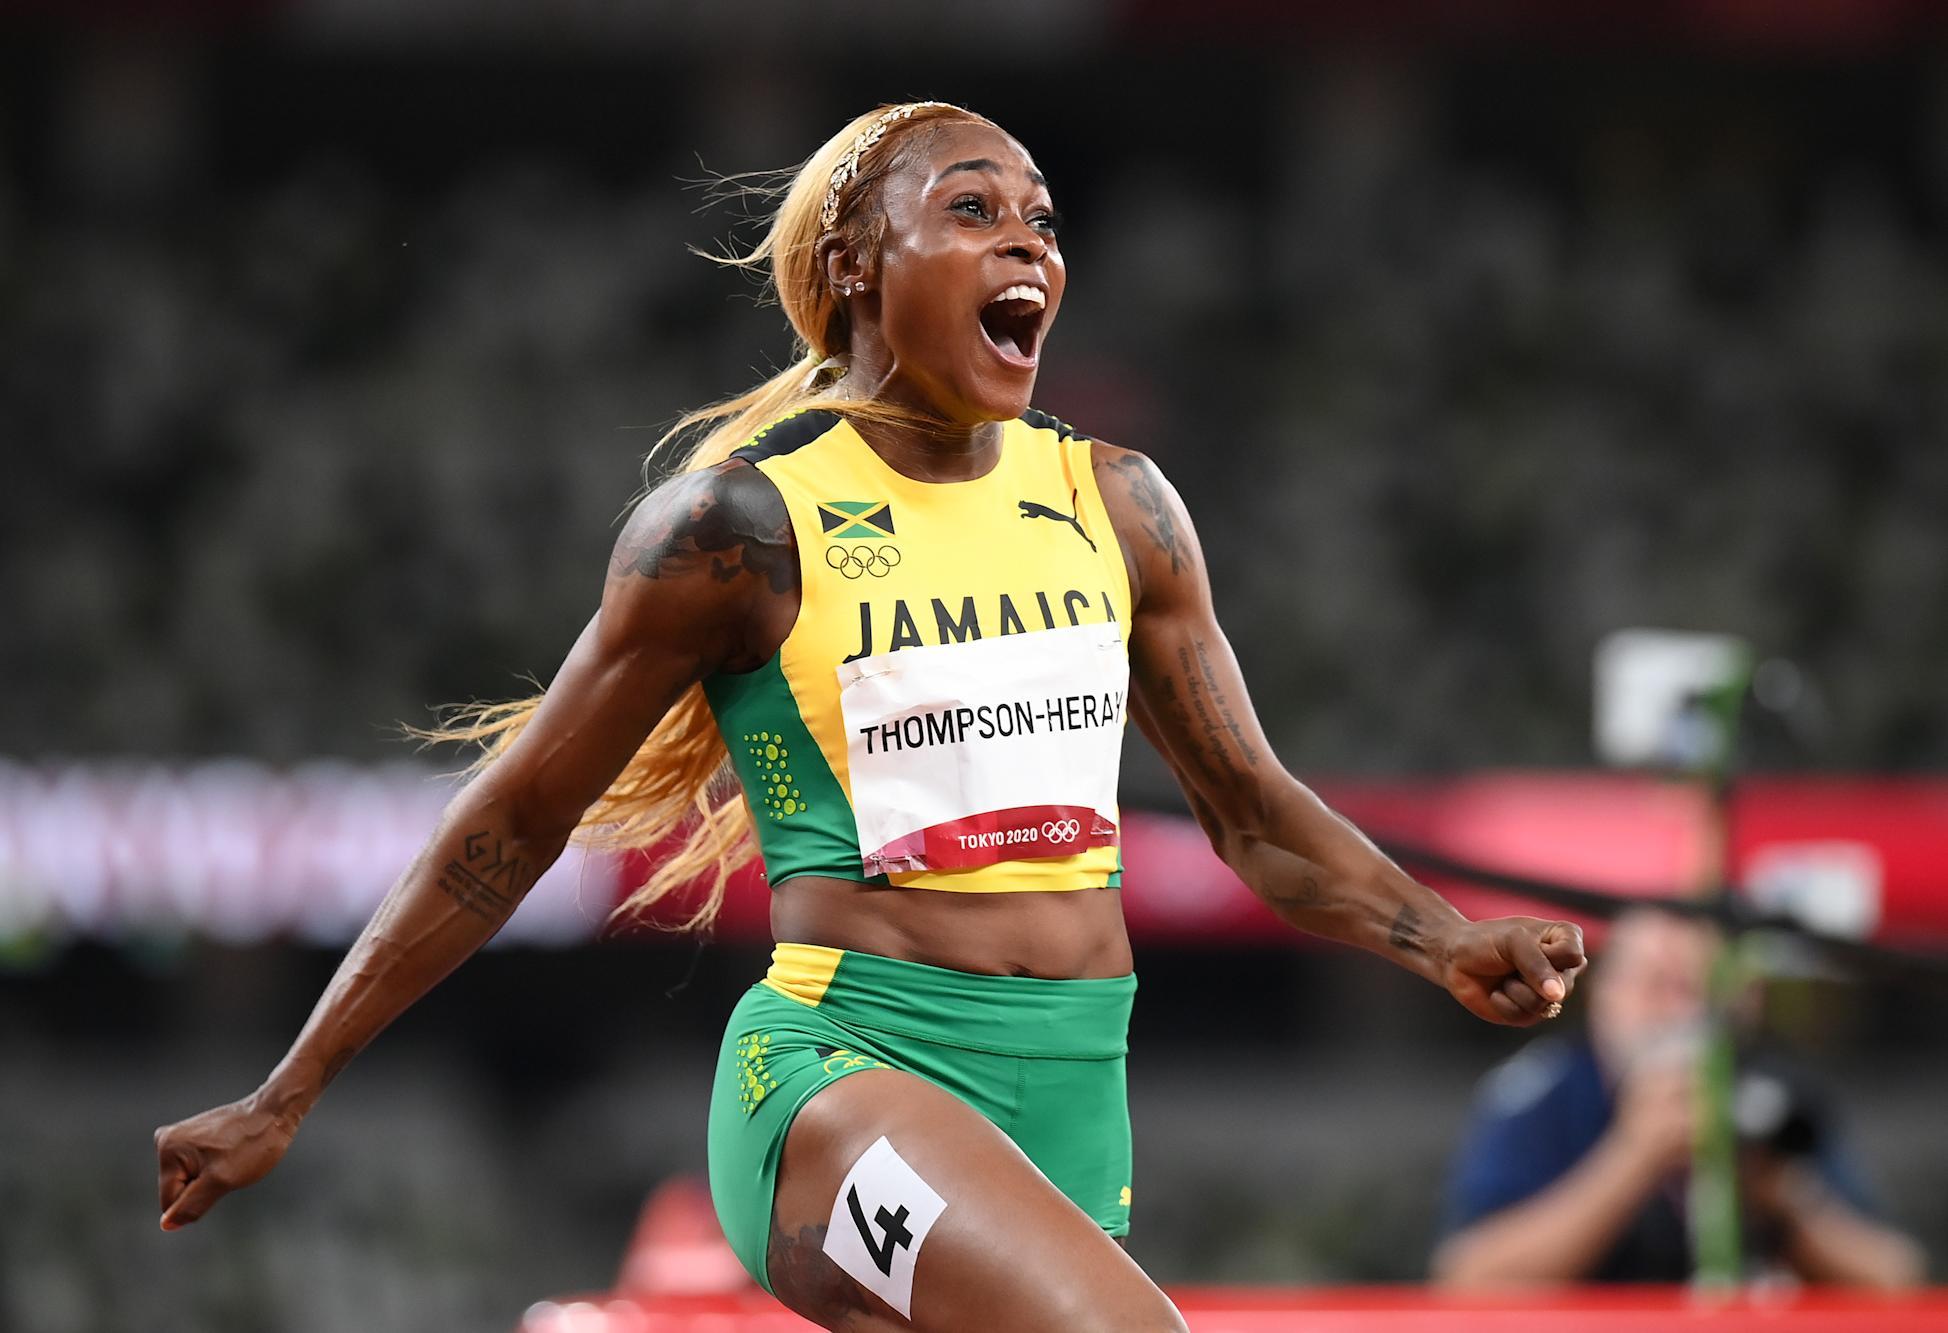 Atletičarka sa Jamajke oborila olimpijski rekord star 33 godine